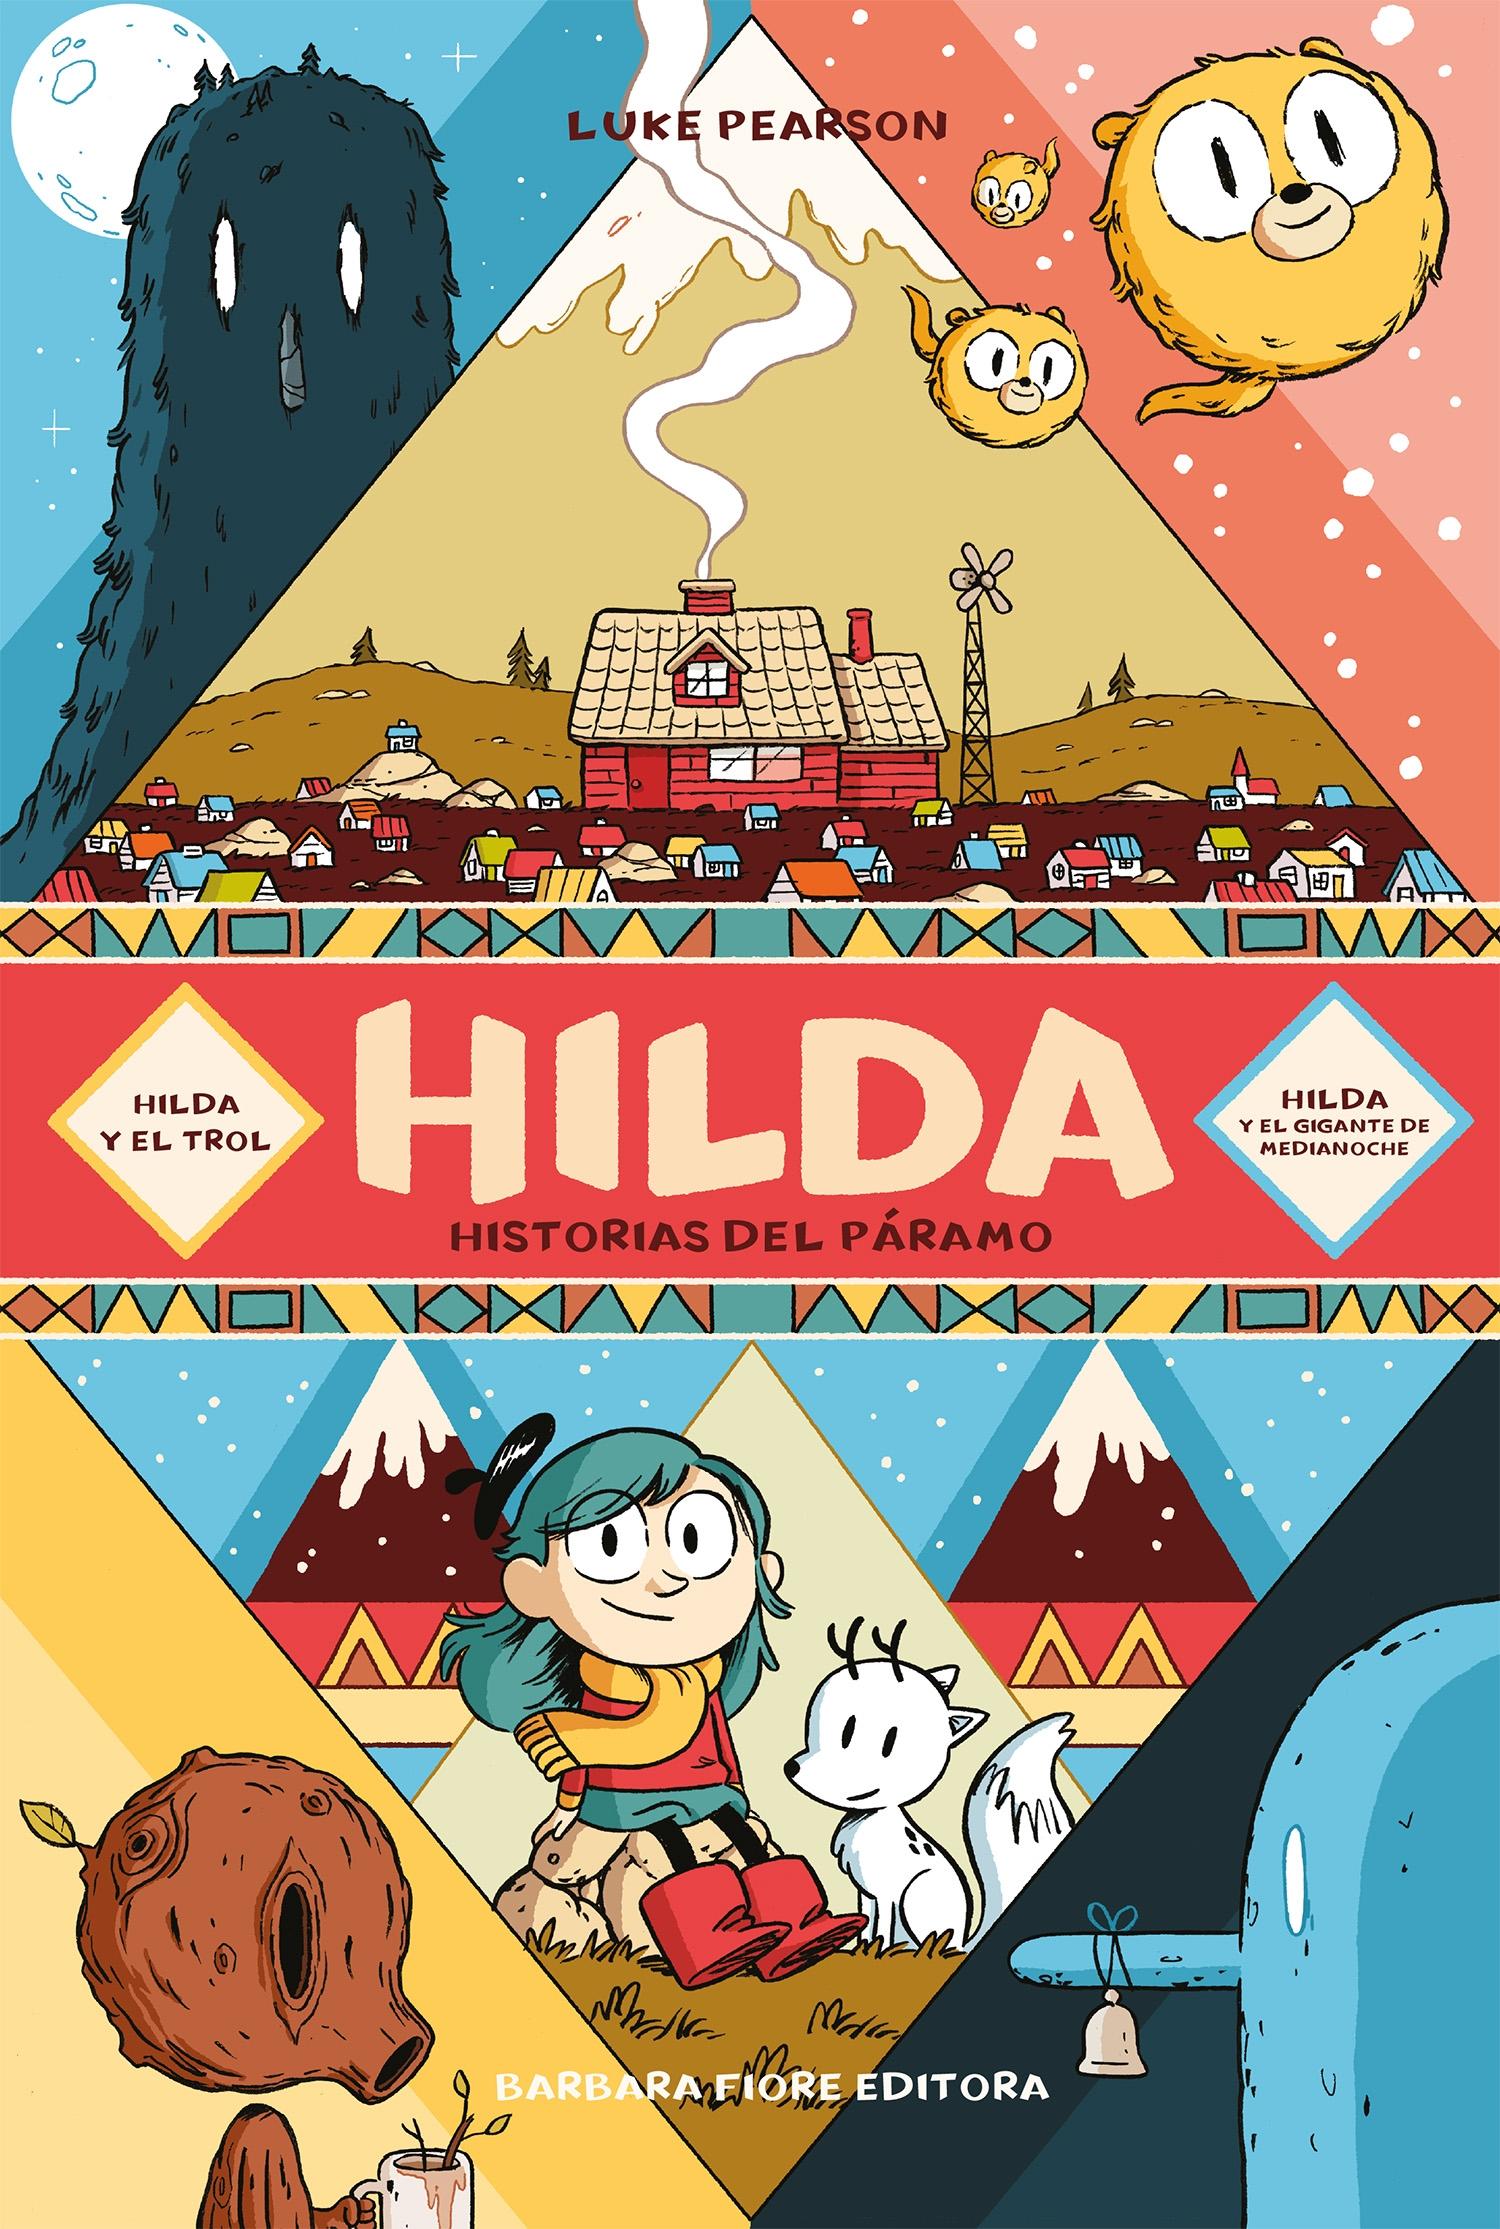 Hilda. Historias del Páramo "Hilda y el Trol | Hilda y el Gigante de Media Noche". 